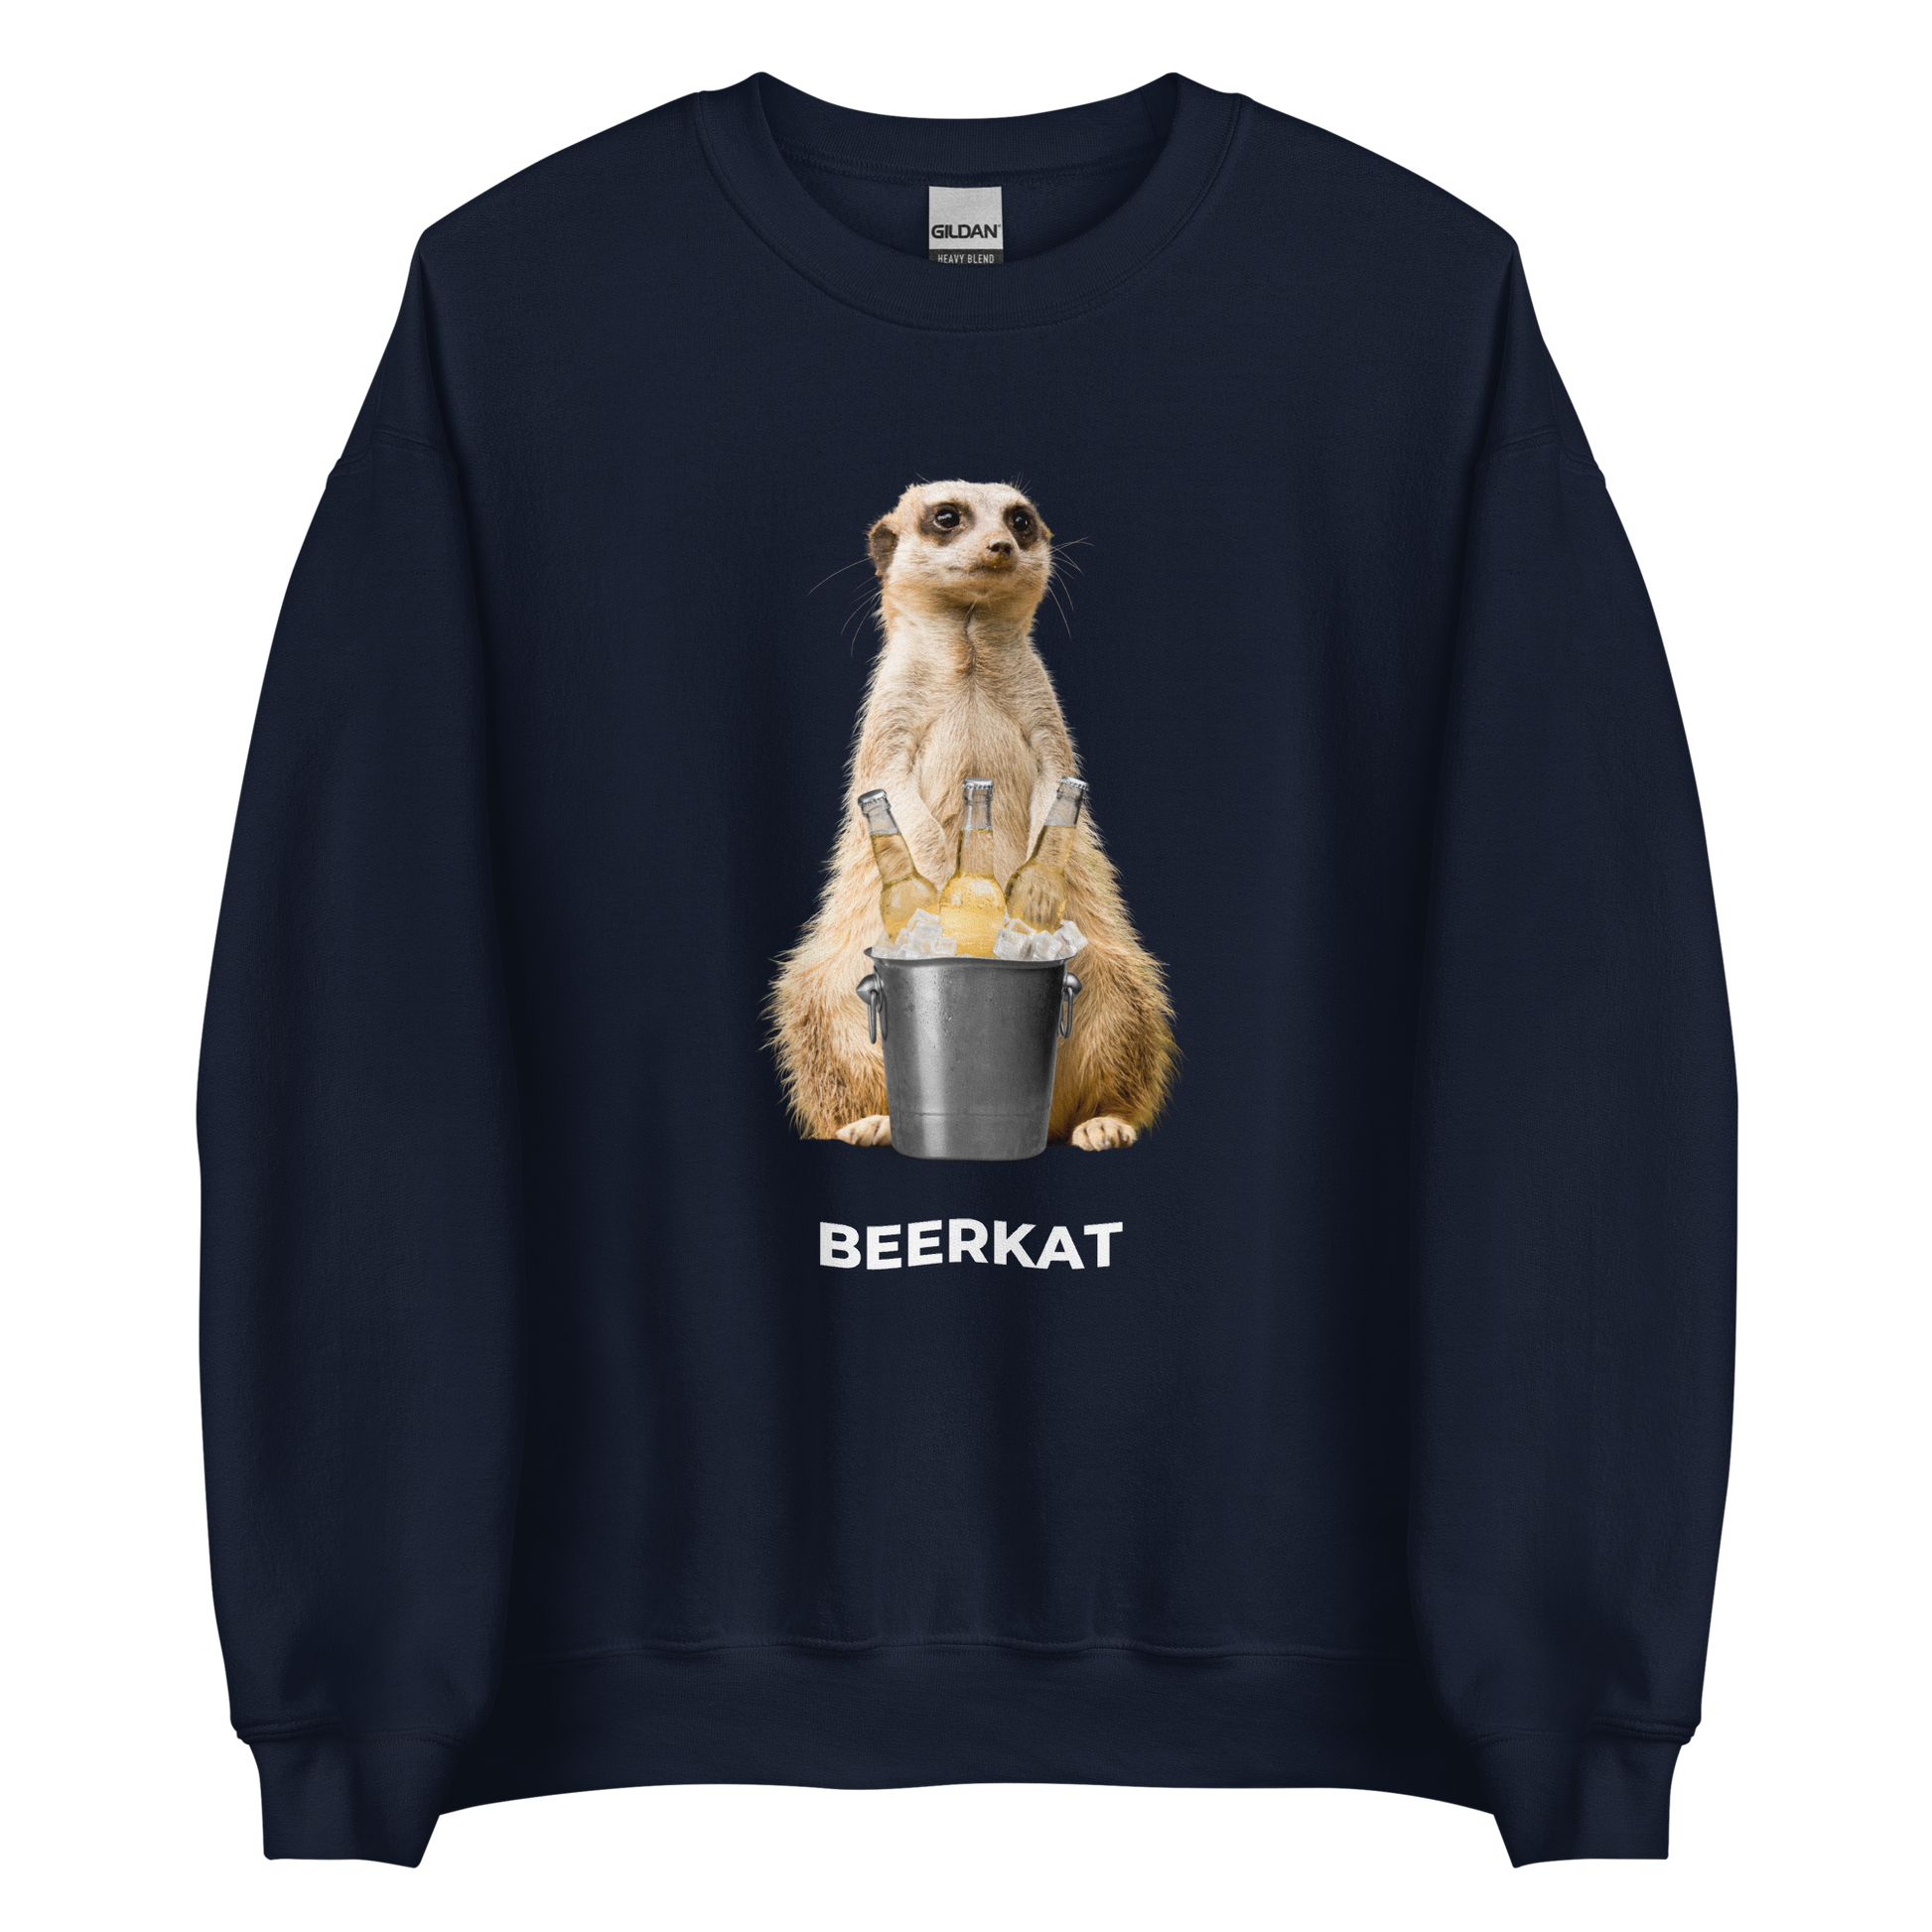 Navy Meerkat Sweatshirt featuring a hilarious Beerkat graphic on the chest - Funny Graphic Meerkat Sweatshirts - Boozy Fox